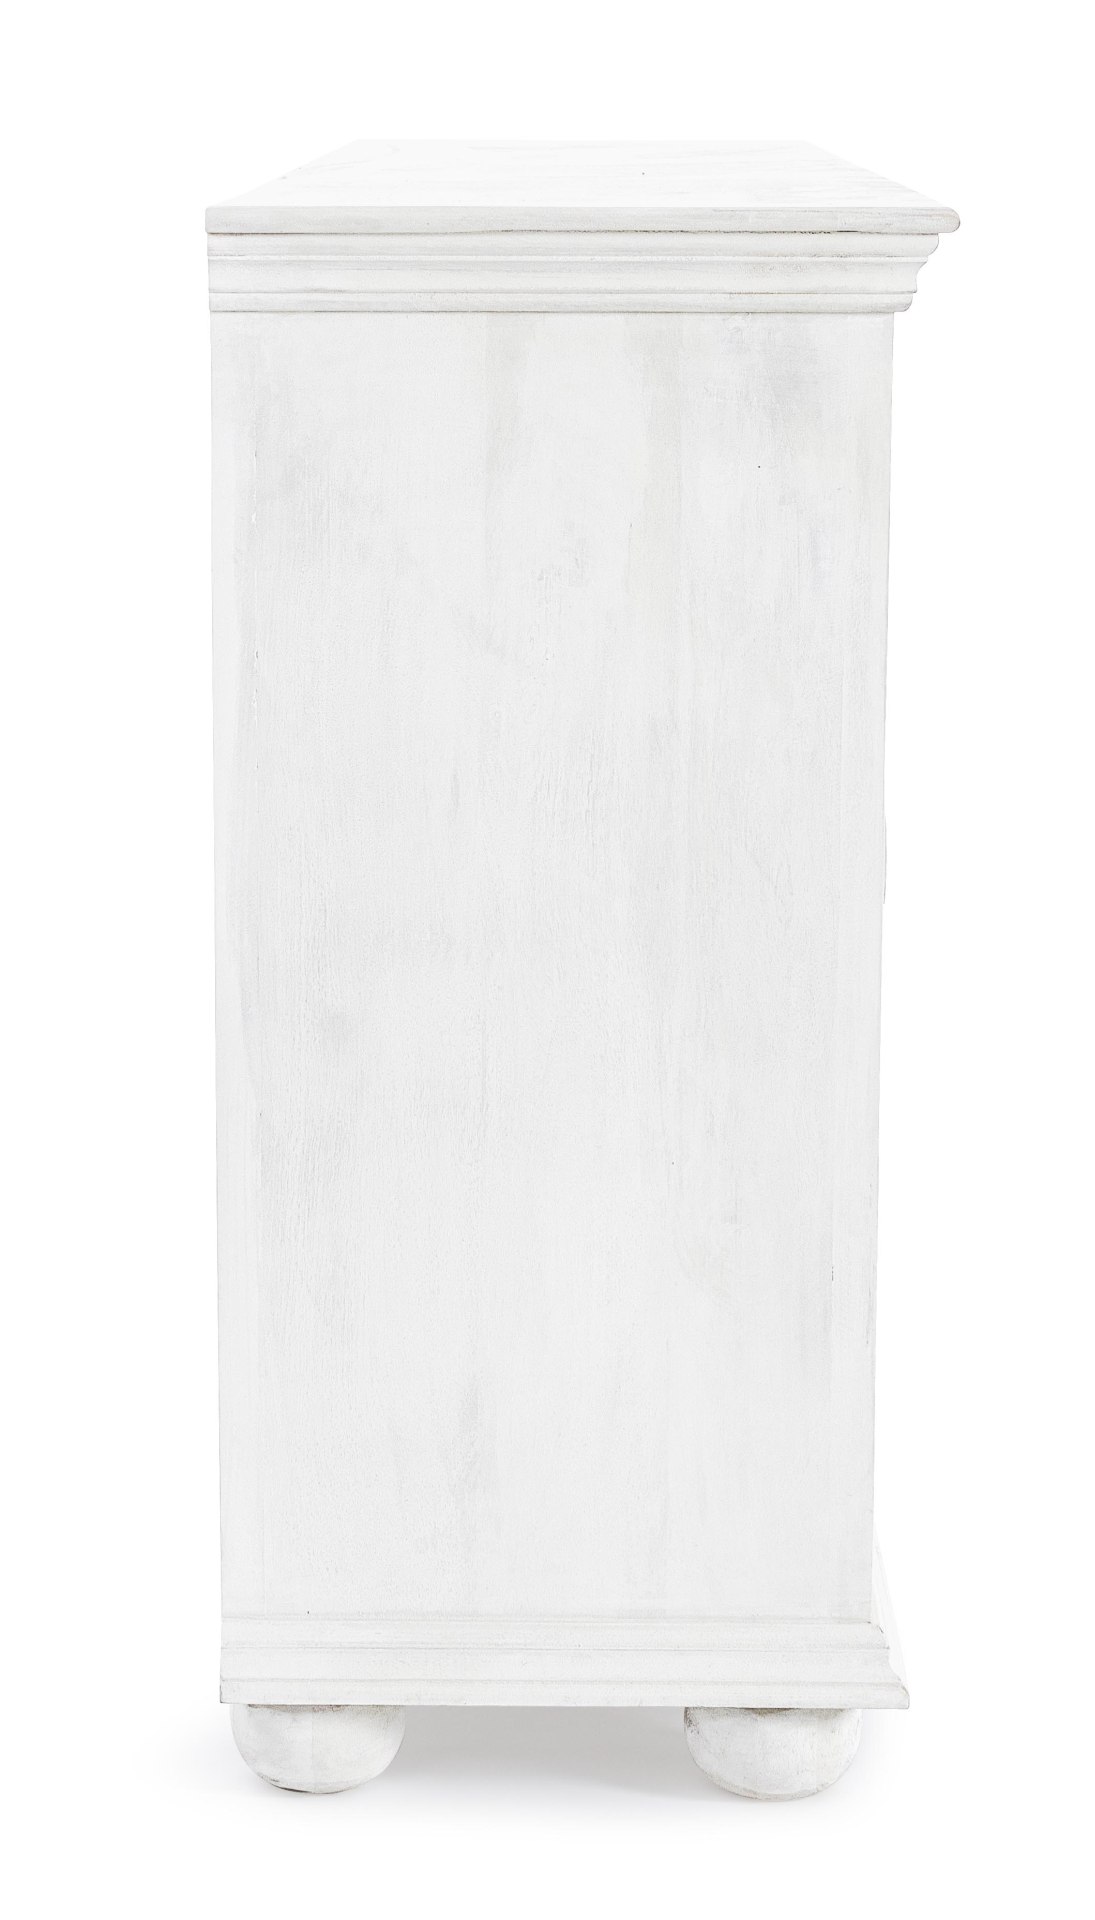 Das Sideboard Alina überzeugt mit seinem klassischen Design. Gefertigt wurde es aus Mango-Holz, welches einen weißen Farbton besitzt. Das Gestell ist auch aus Mango-Holz. Das Sideboard verfügt über vier Türen. Die Breite beträgt 178 cm.